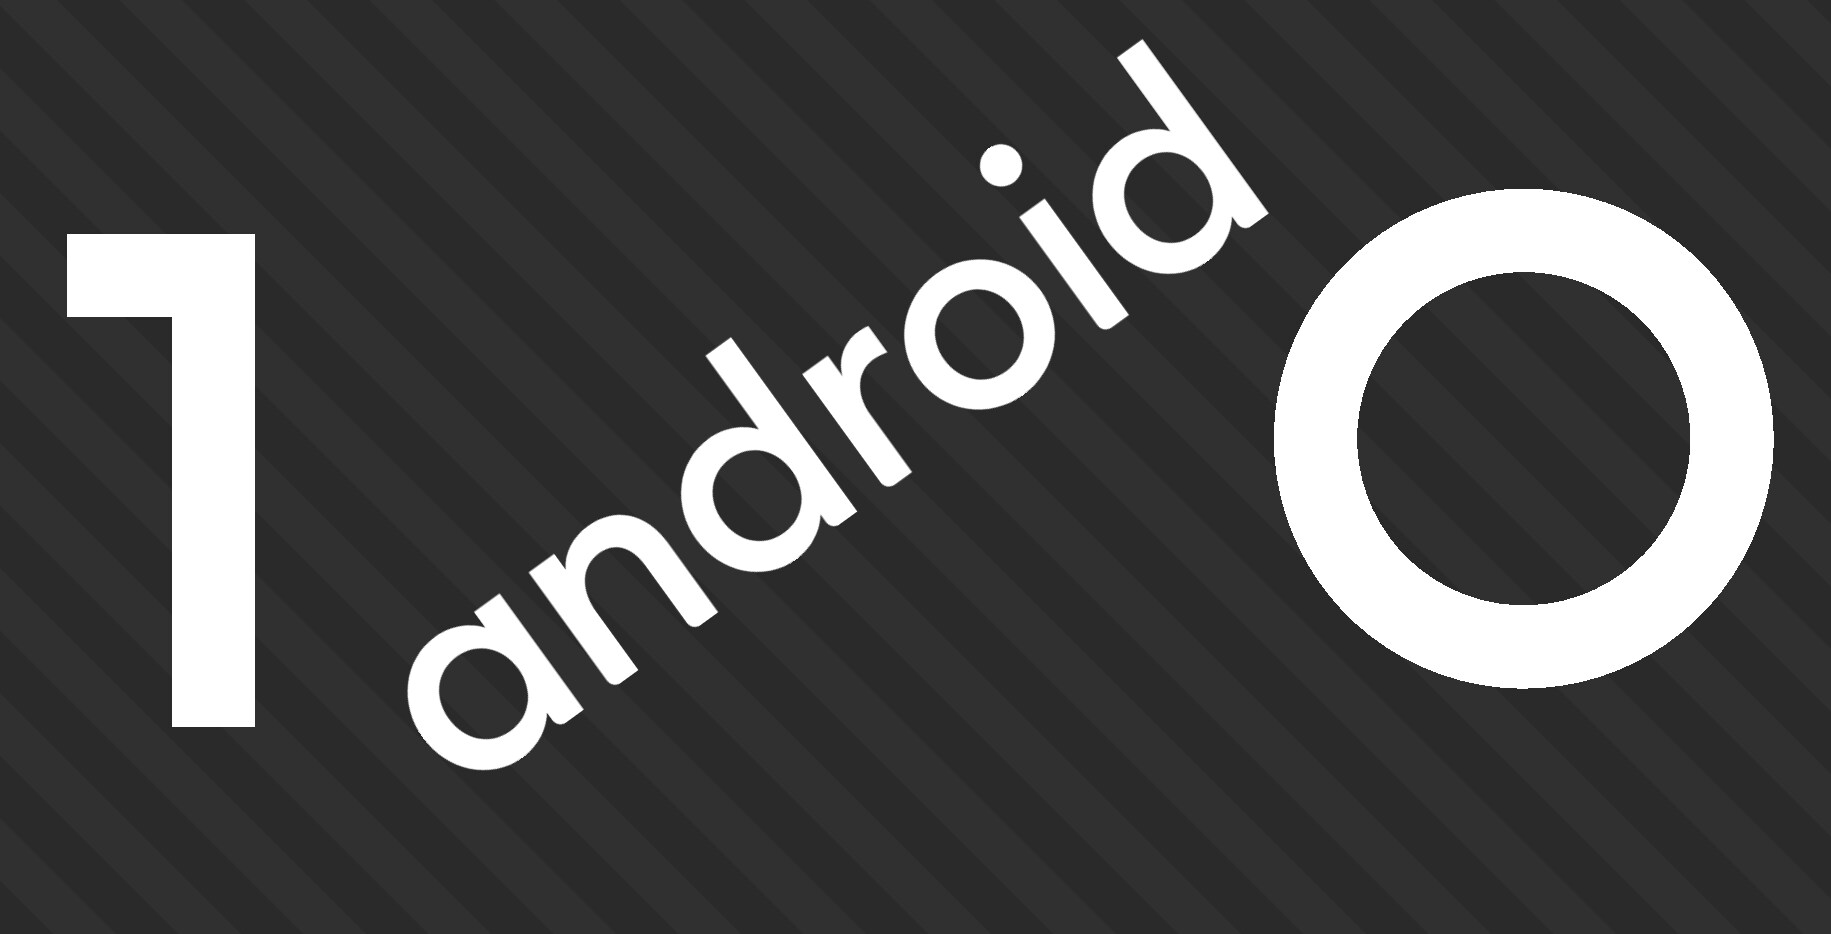 Android 10 a portata di tutti grazie al modding: custom ROM per Xiaomi Mi3, Mi4, Redmi Note 7 e ZUK Z2 Plus (aggiornato)